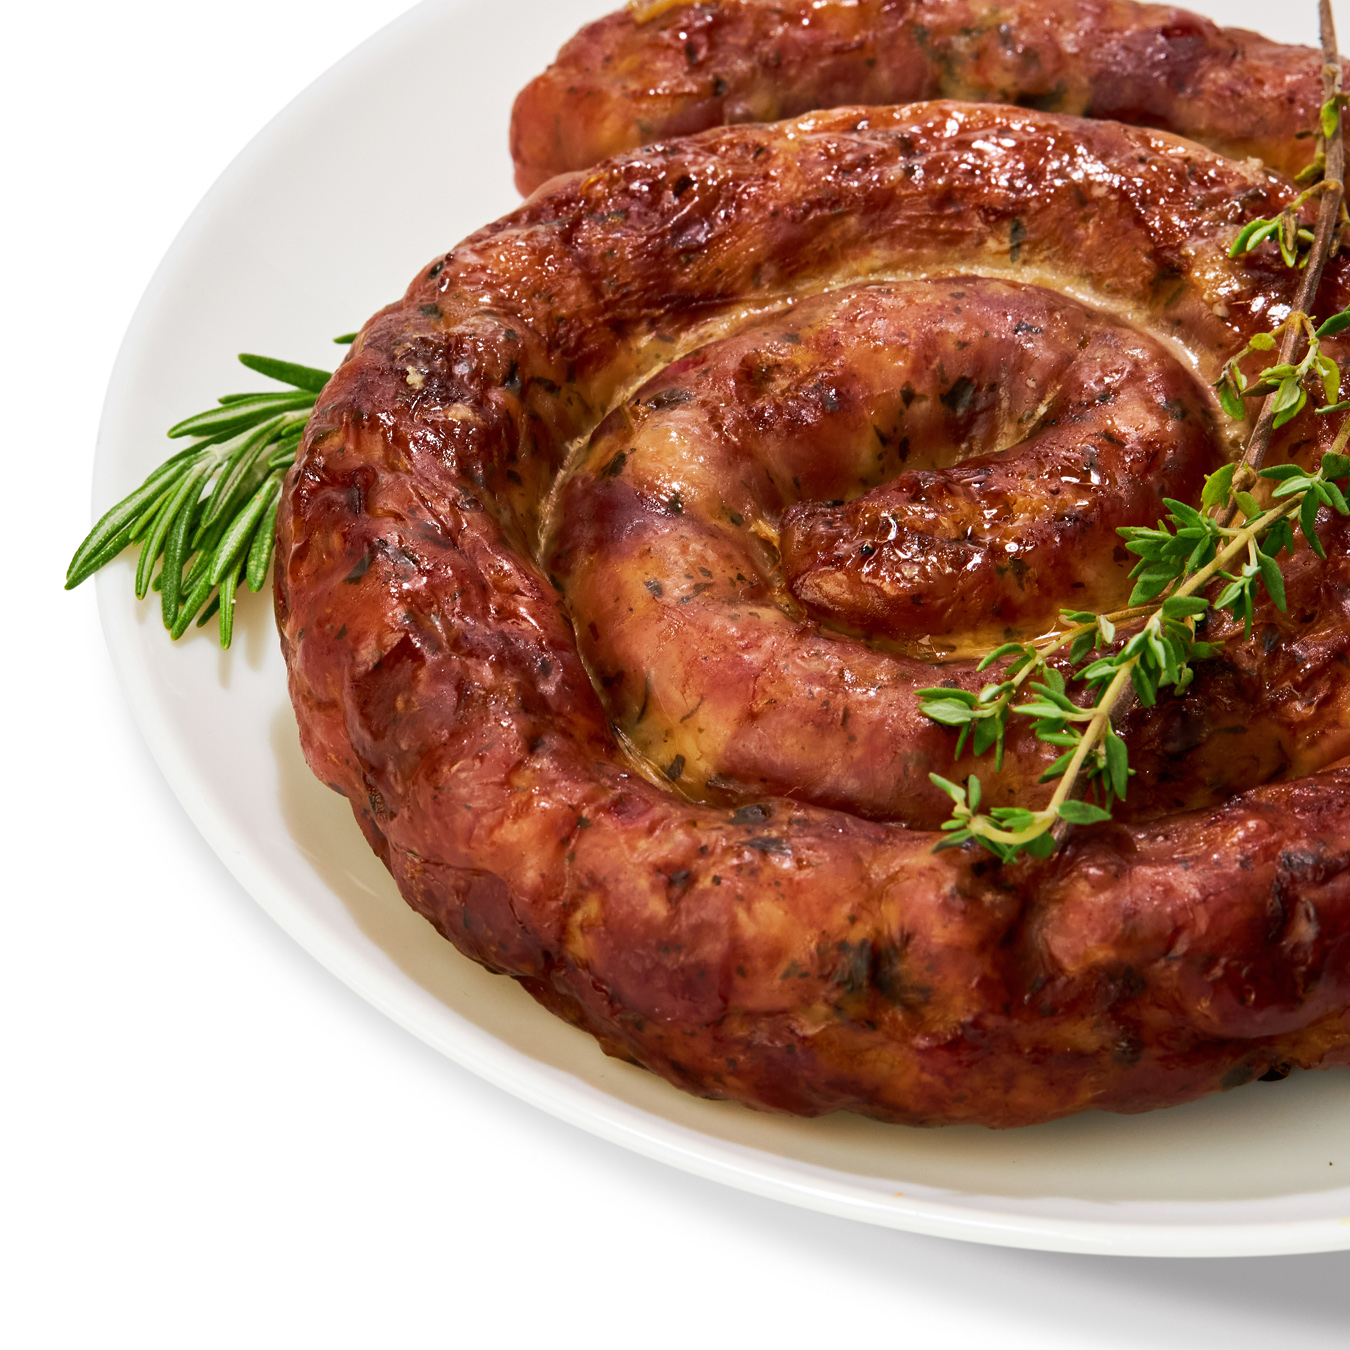 Munich Grilled Sausages